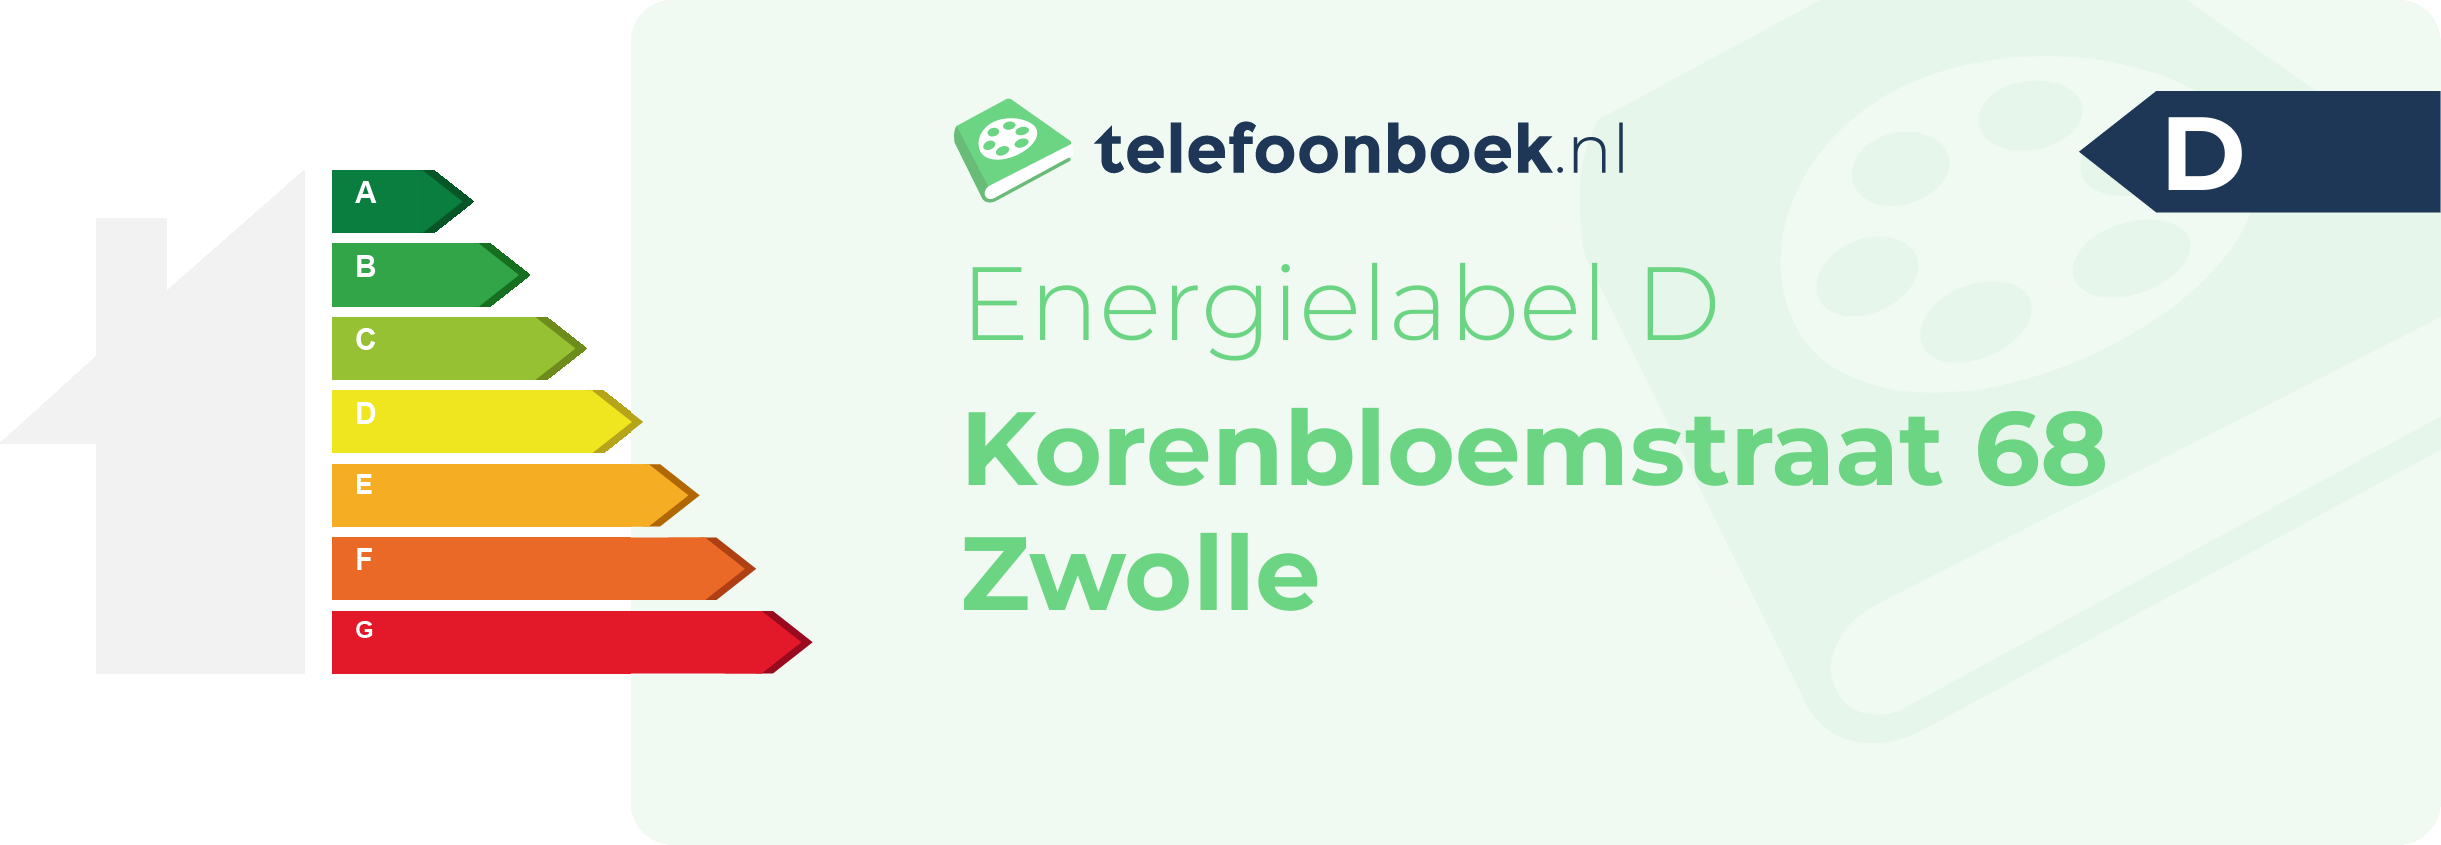 Energielabel Korenbloemstraat 68 Zwolle